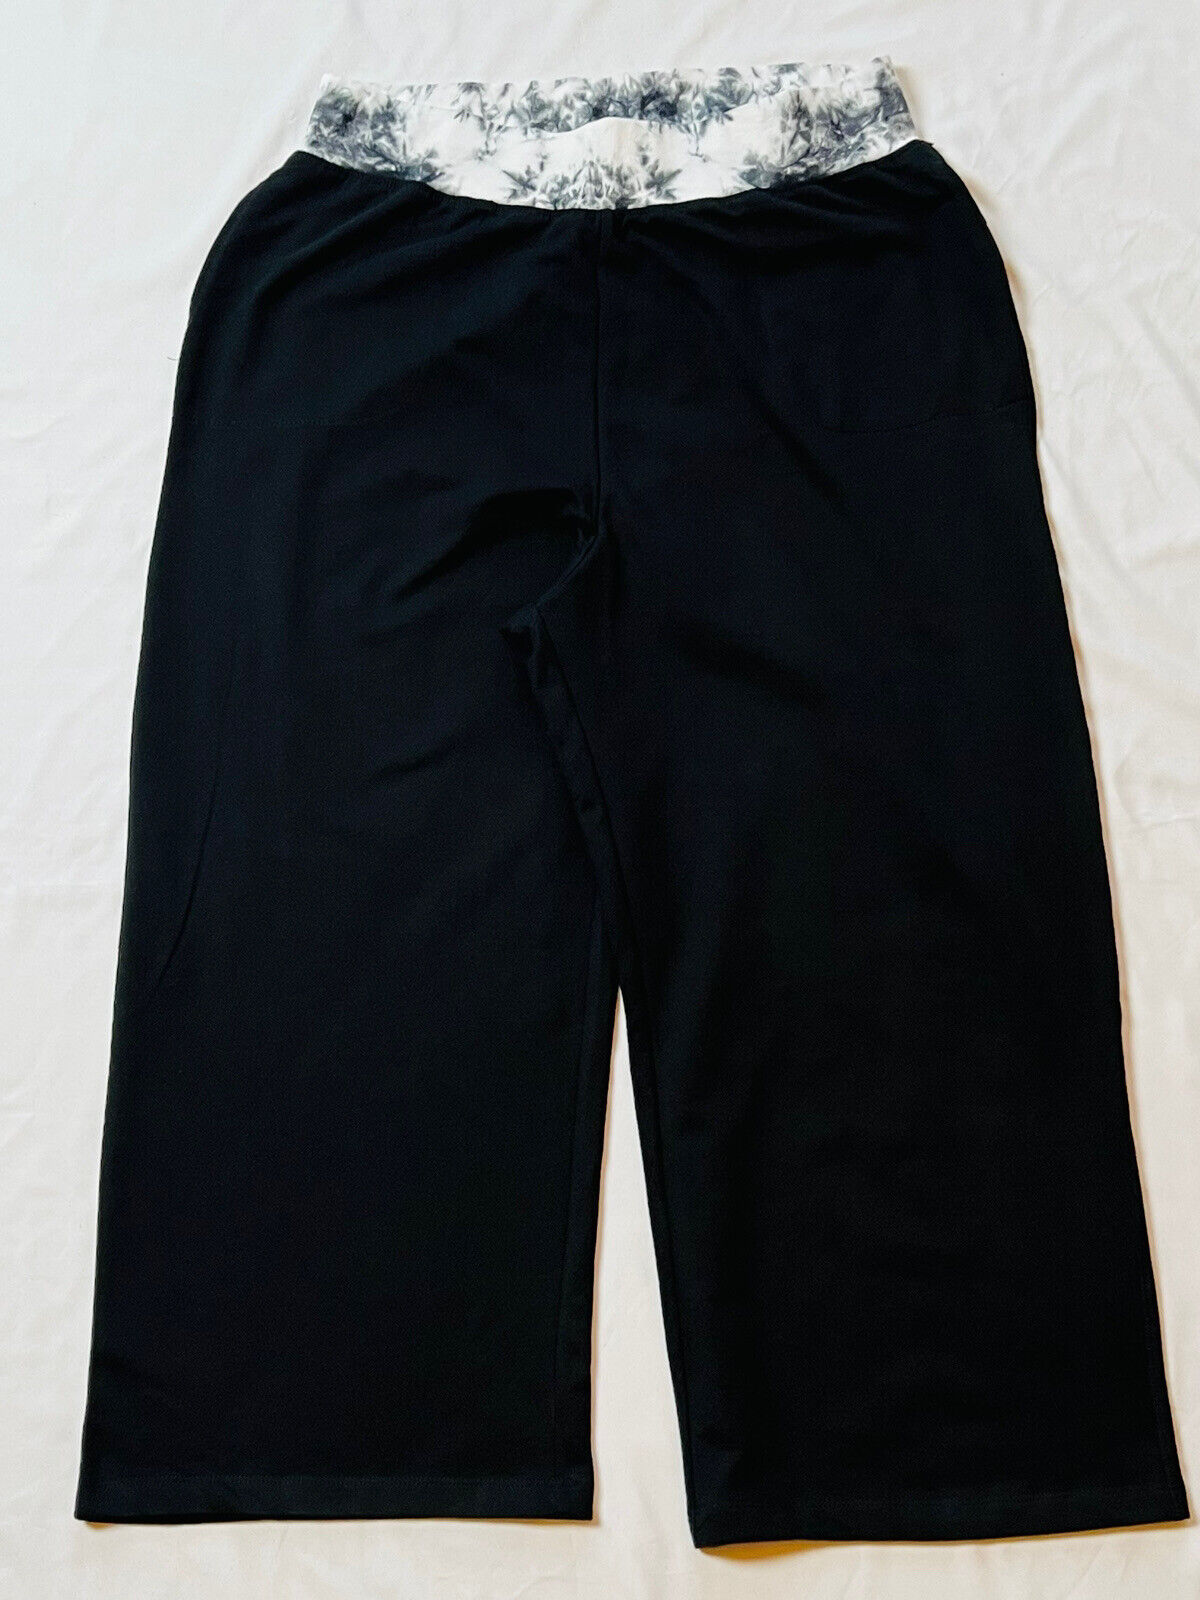 Nanette Lepore Women's Wide Leg Yoga Pants Black Sz XL – Clearance